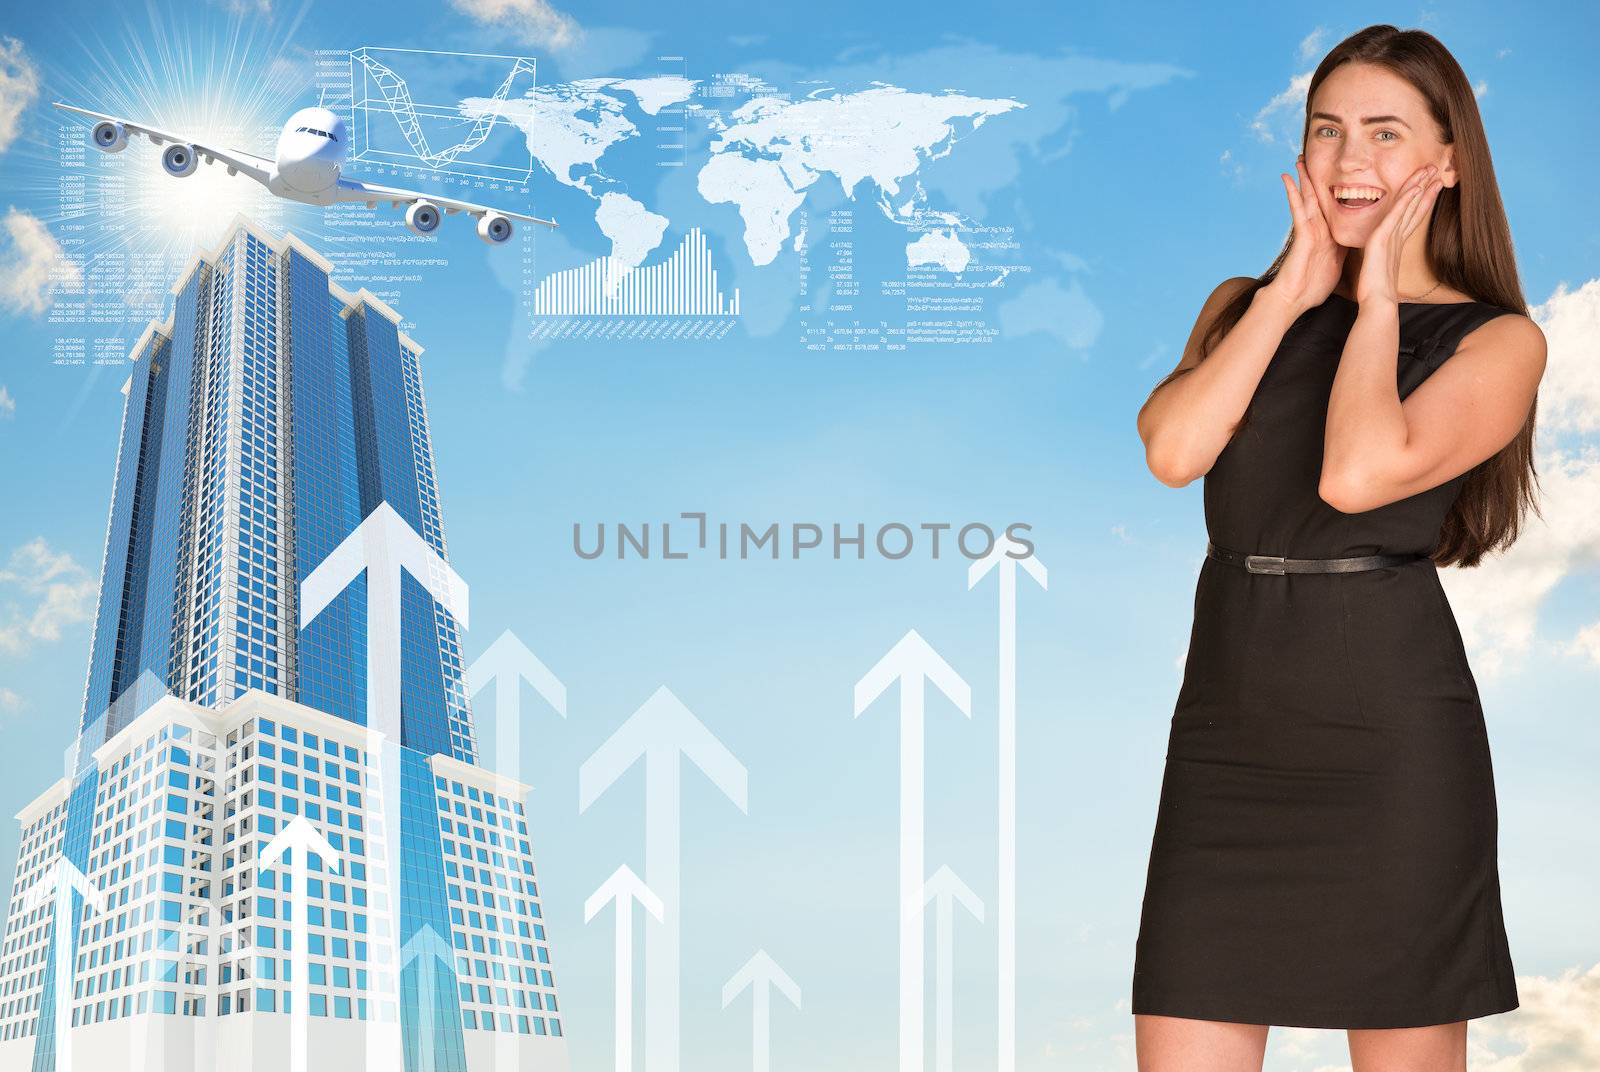 Joyful businesswoman in dress. World map, buildings and arrows as backdrop